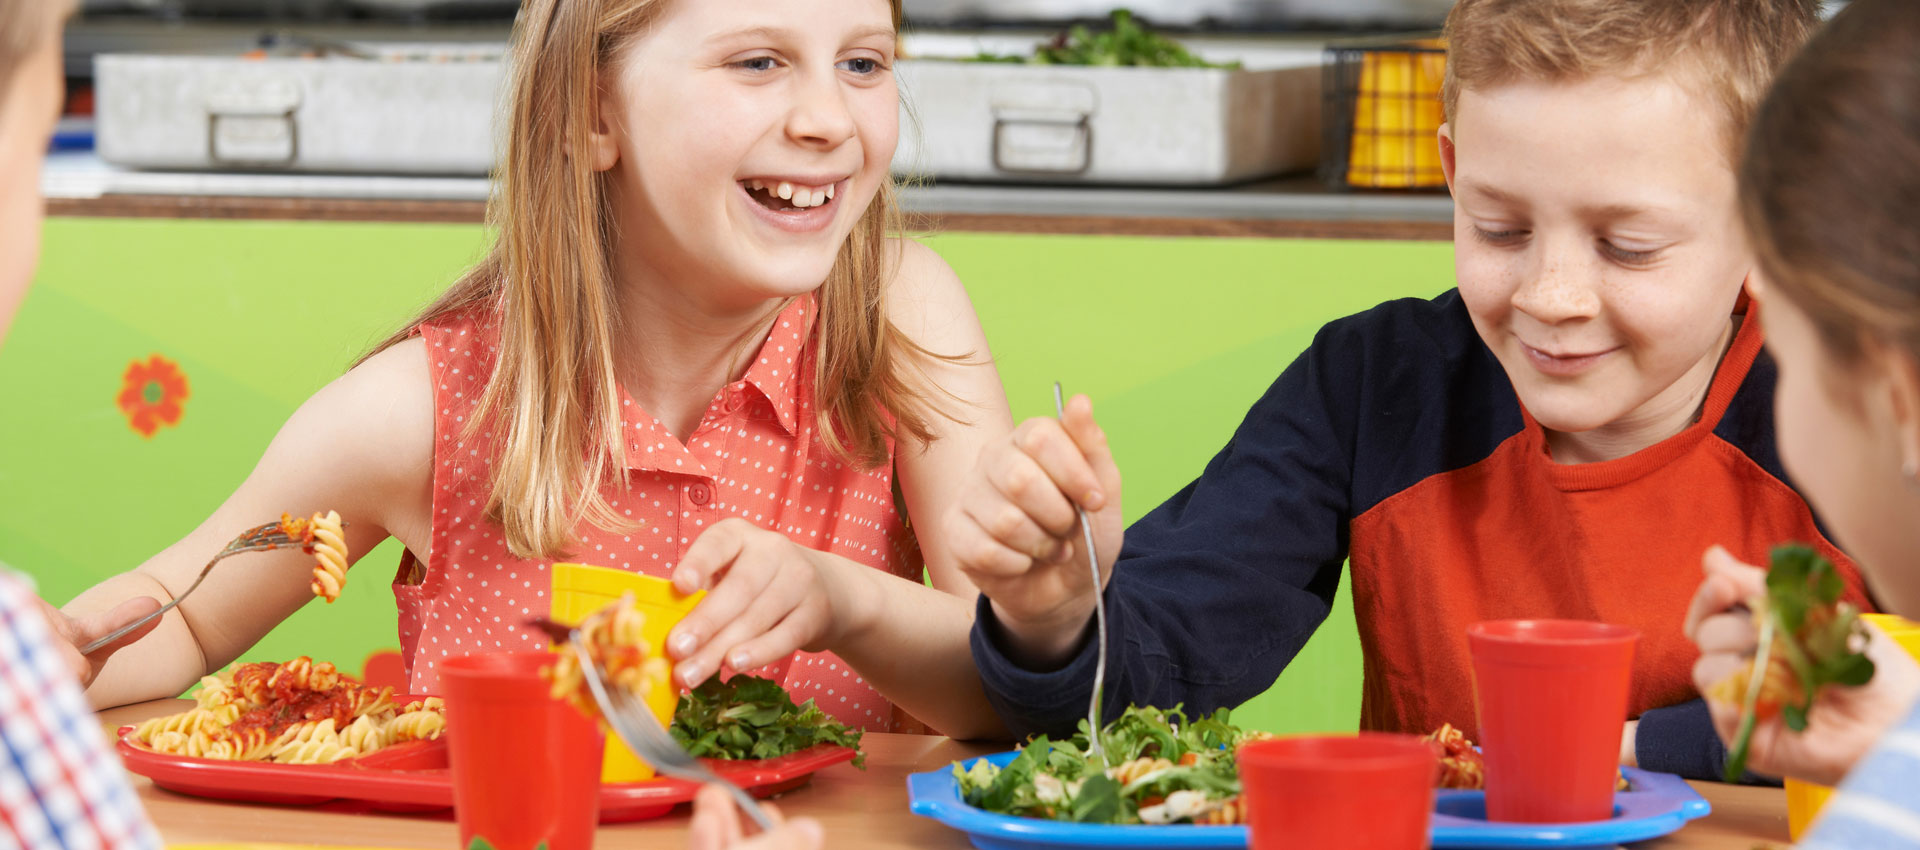 Il benessere dei bambini parte da un’alimentazione sana e bilanciata